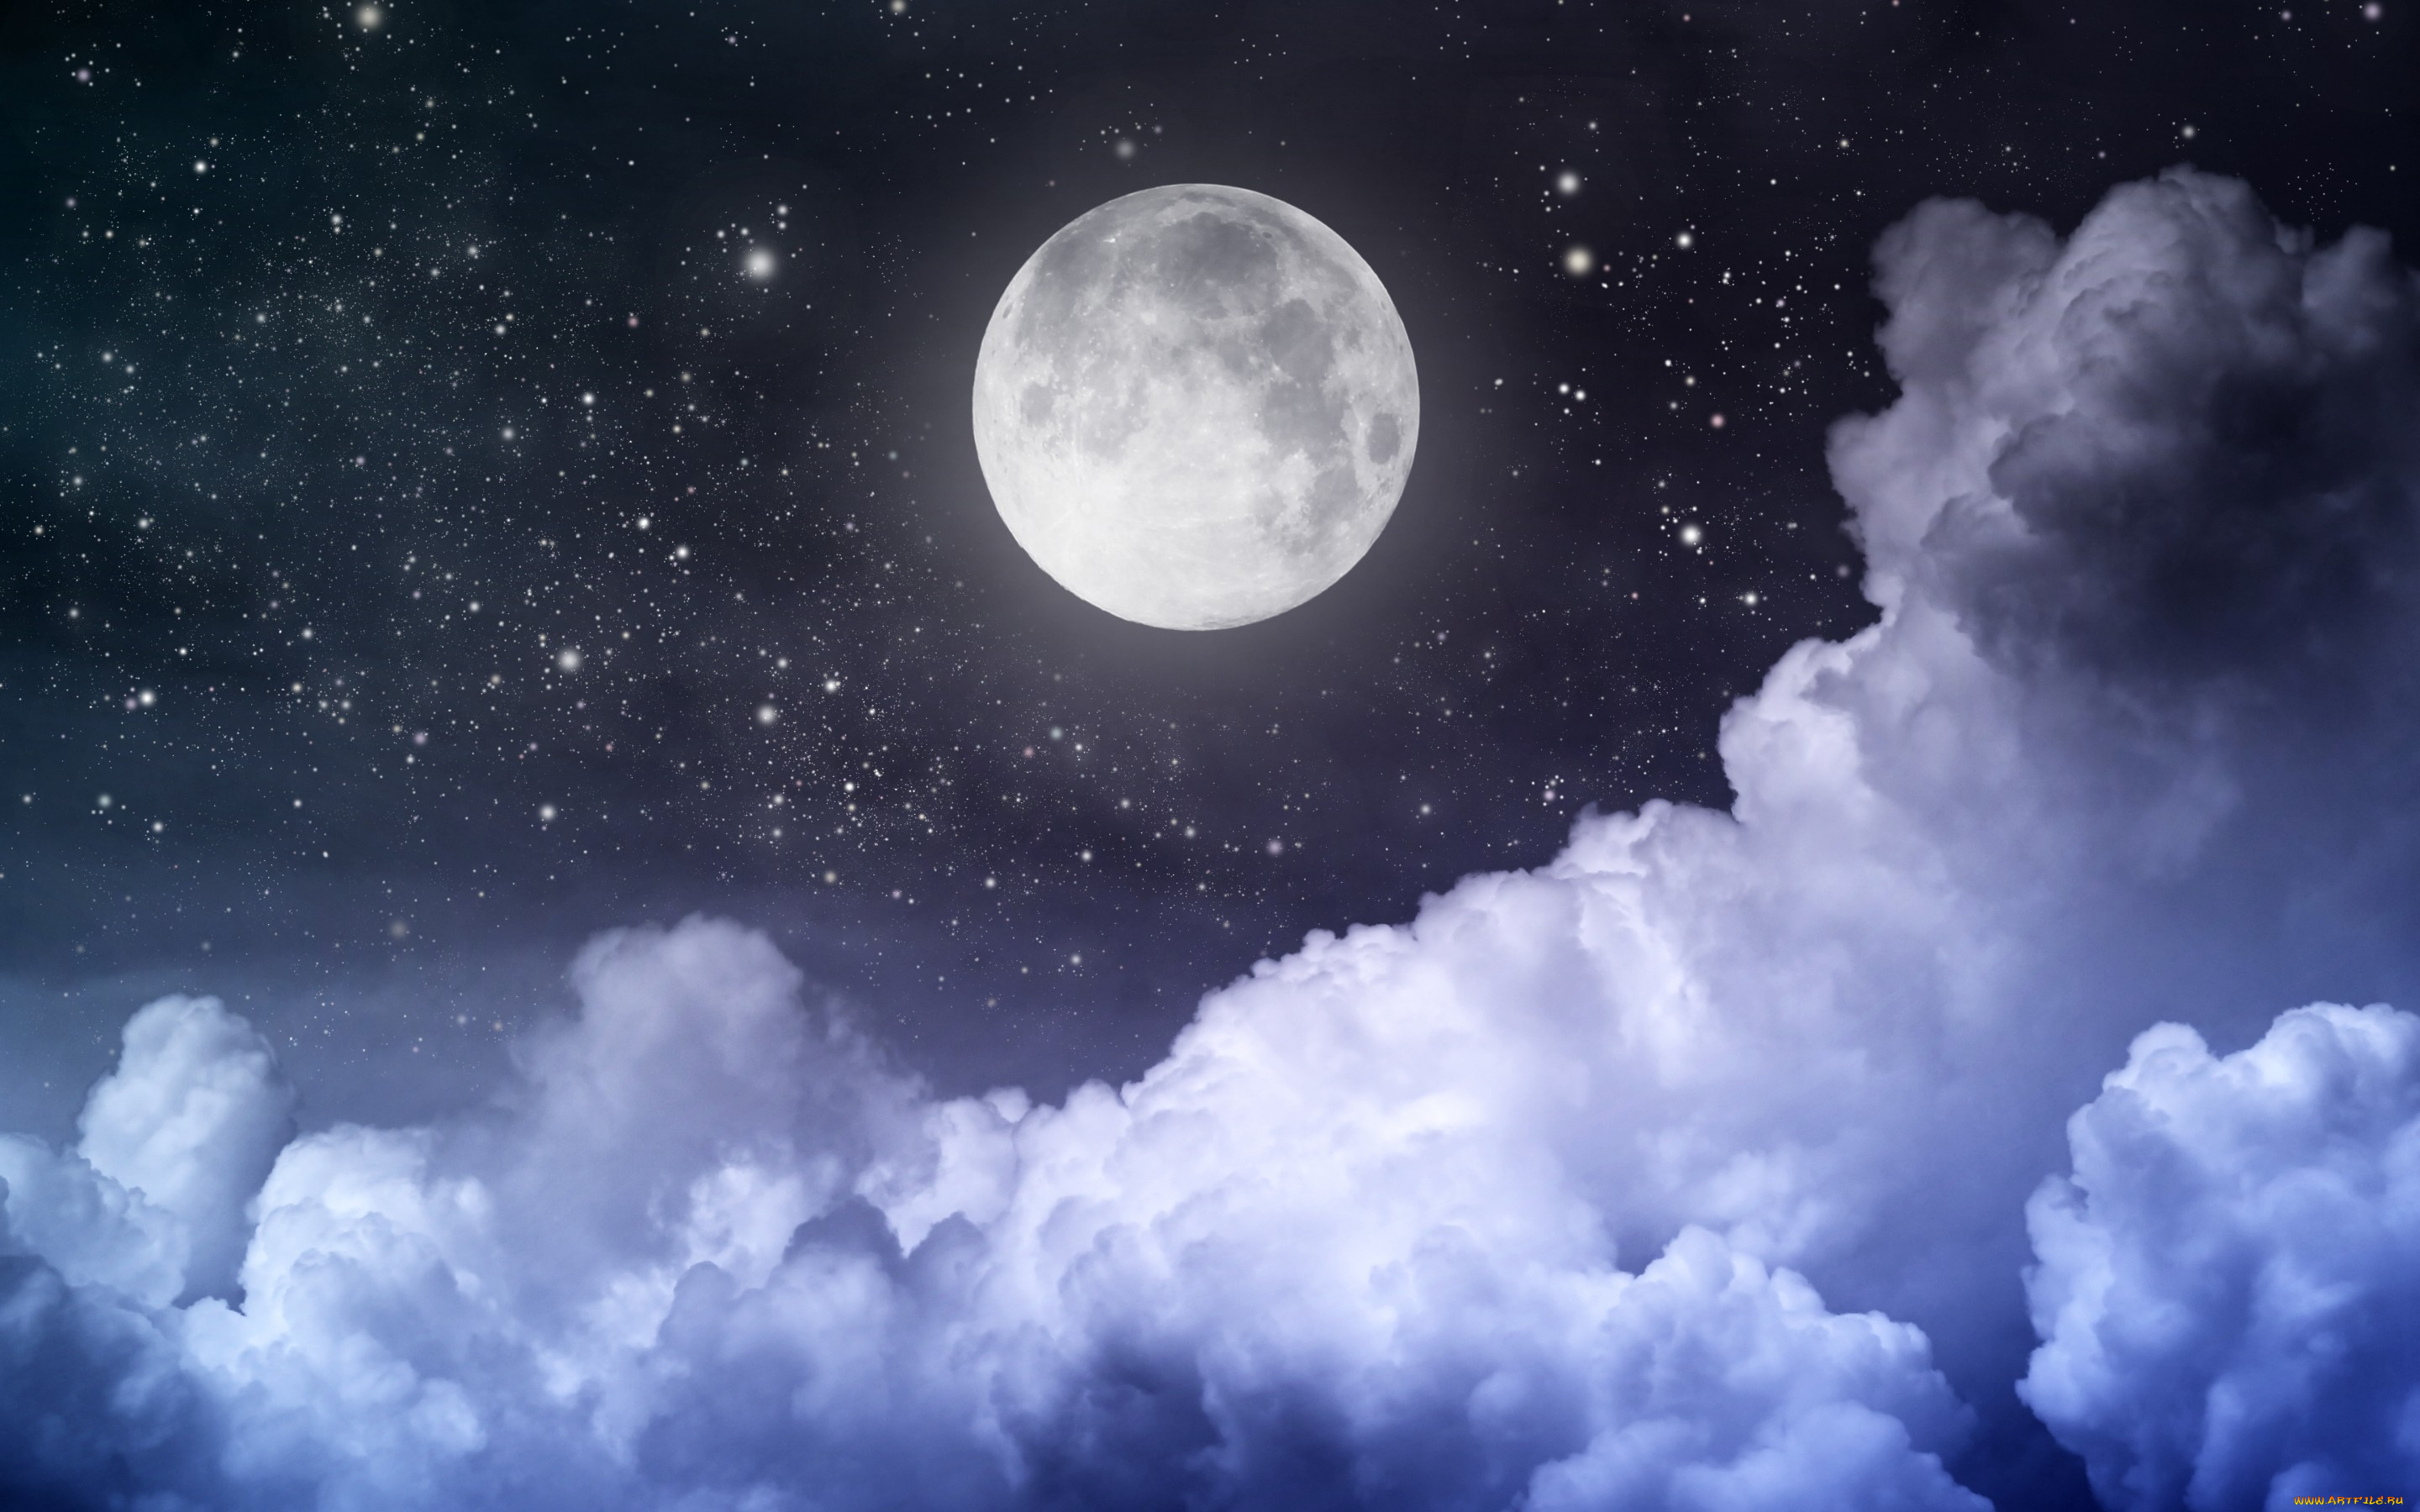 космос, луна, облака, полночь, moonlight, night, sky, moon, небо, clouds, stars, full, ночь, landscape, звезды, полная